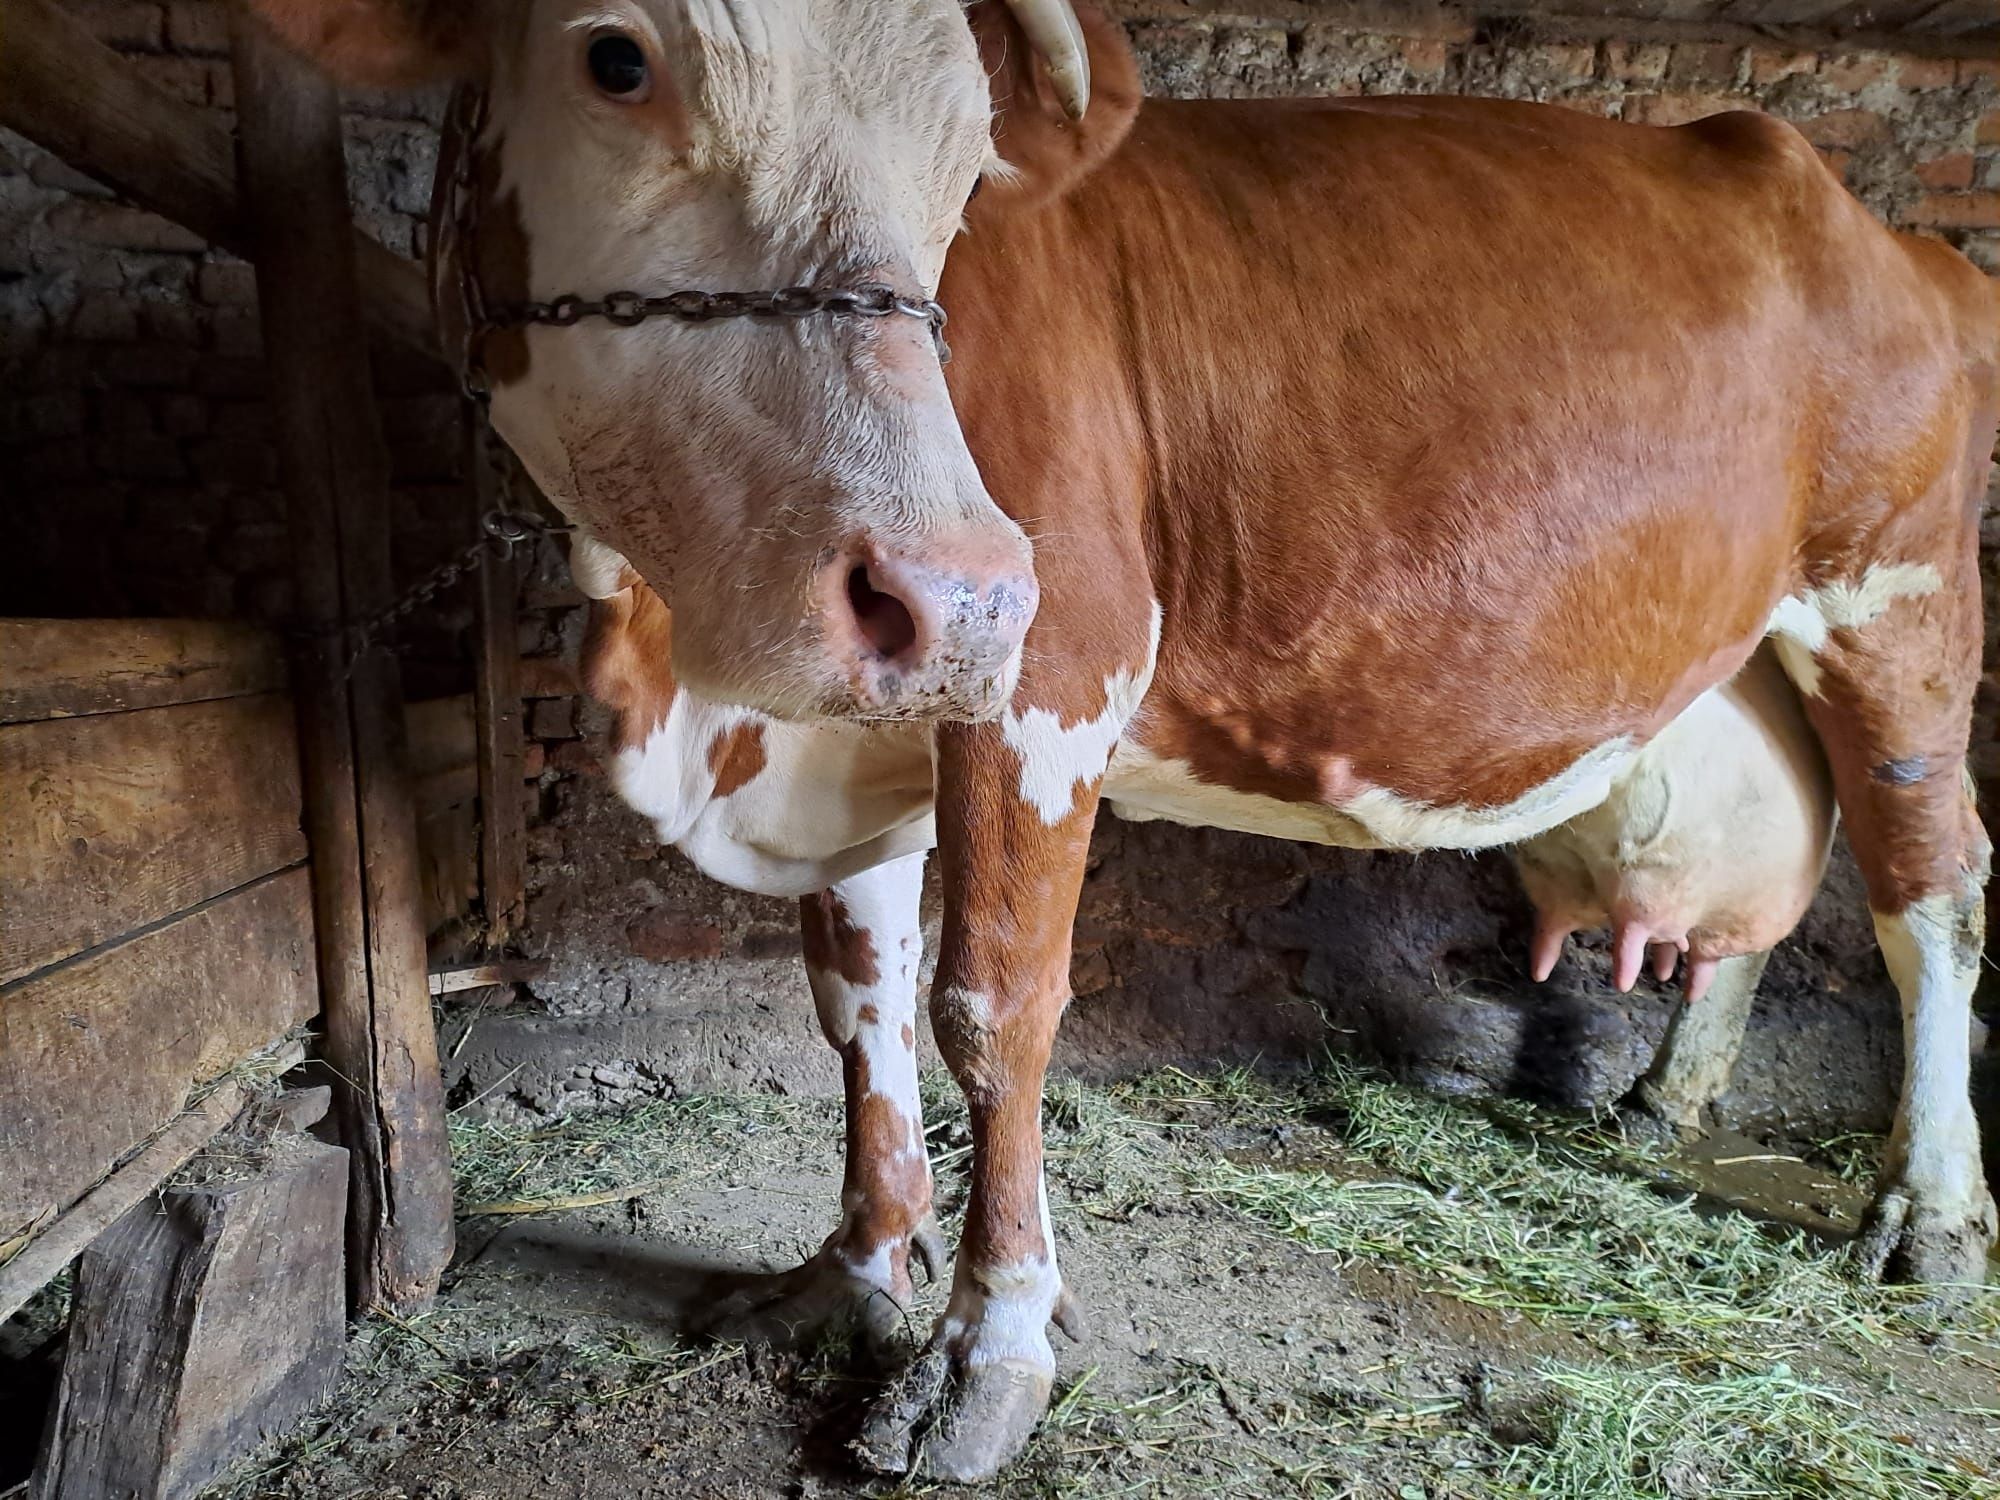 Vaca Bălțată Românească